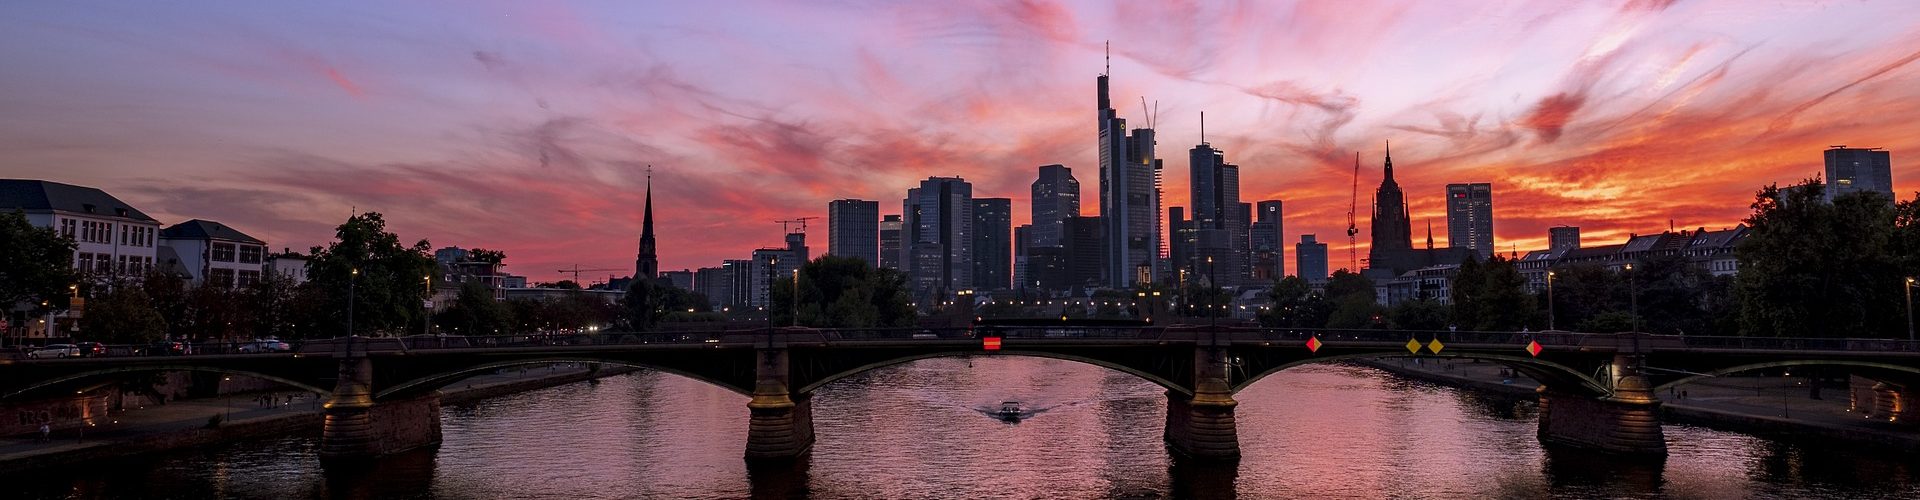 Frankfurt-Main-Skyline